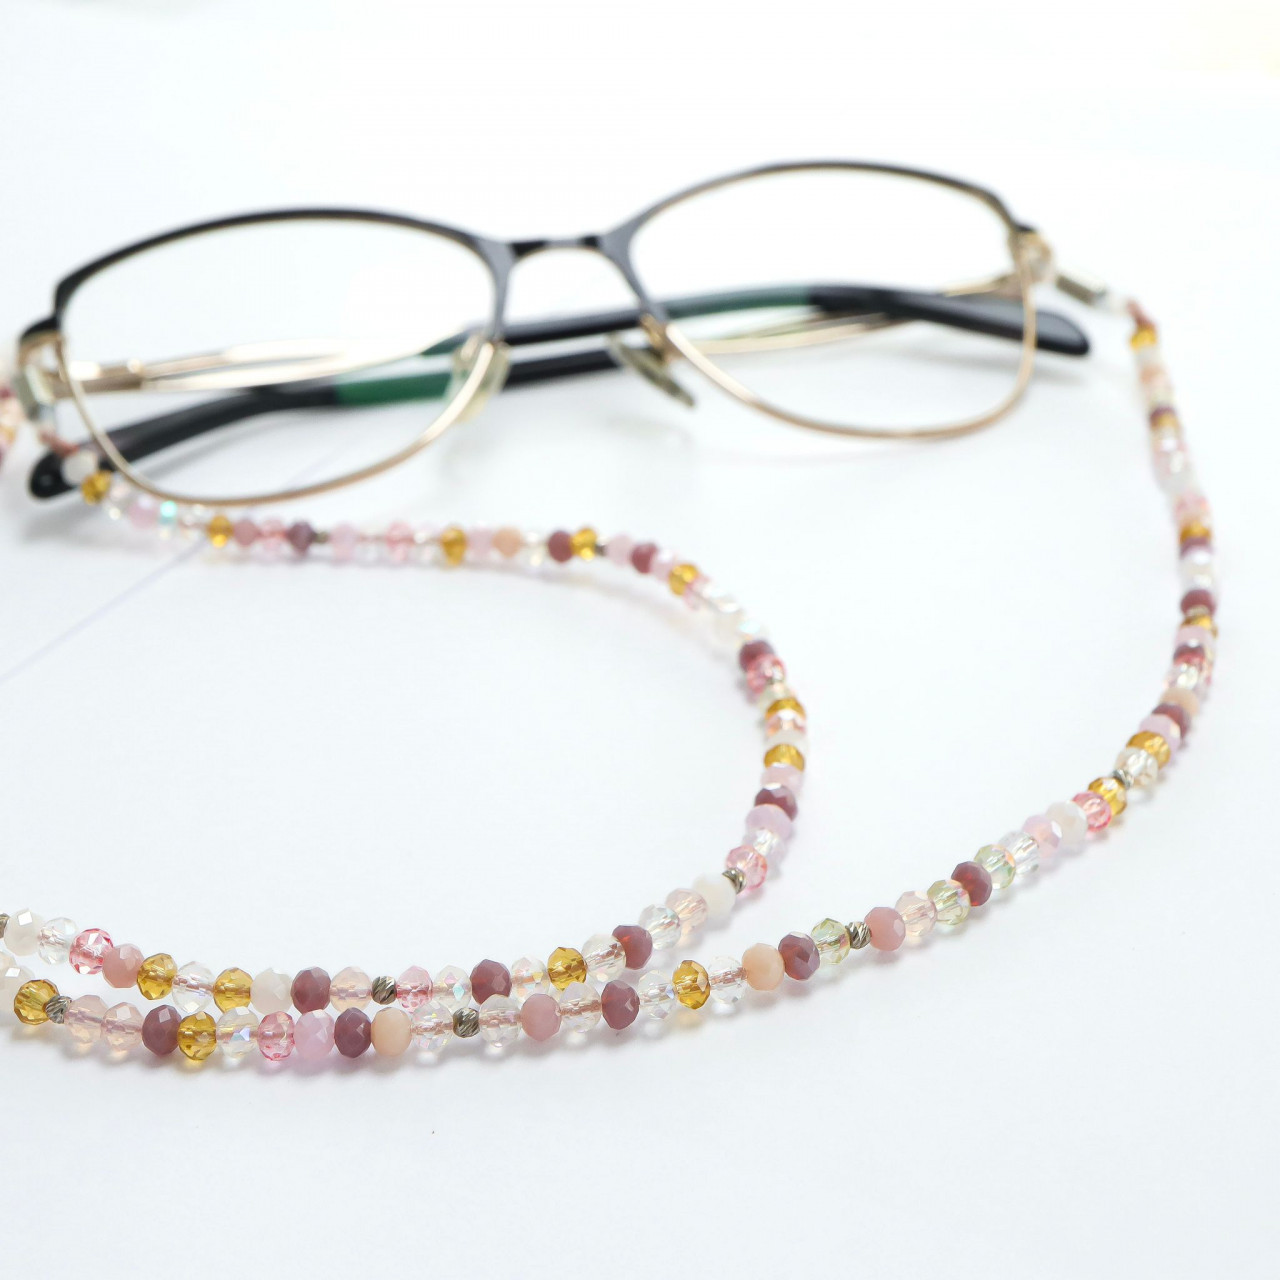 Lănțișor pentru ochelari cu cristale si bilute din argint 925